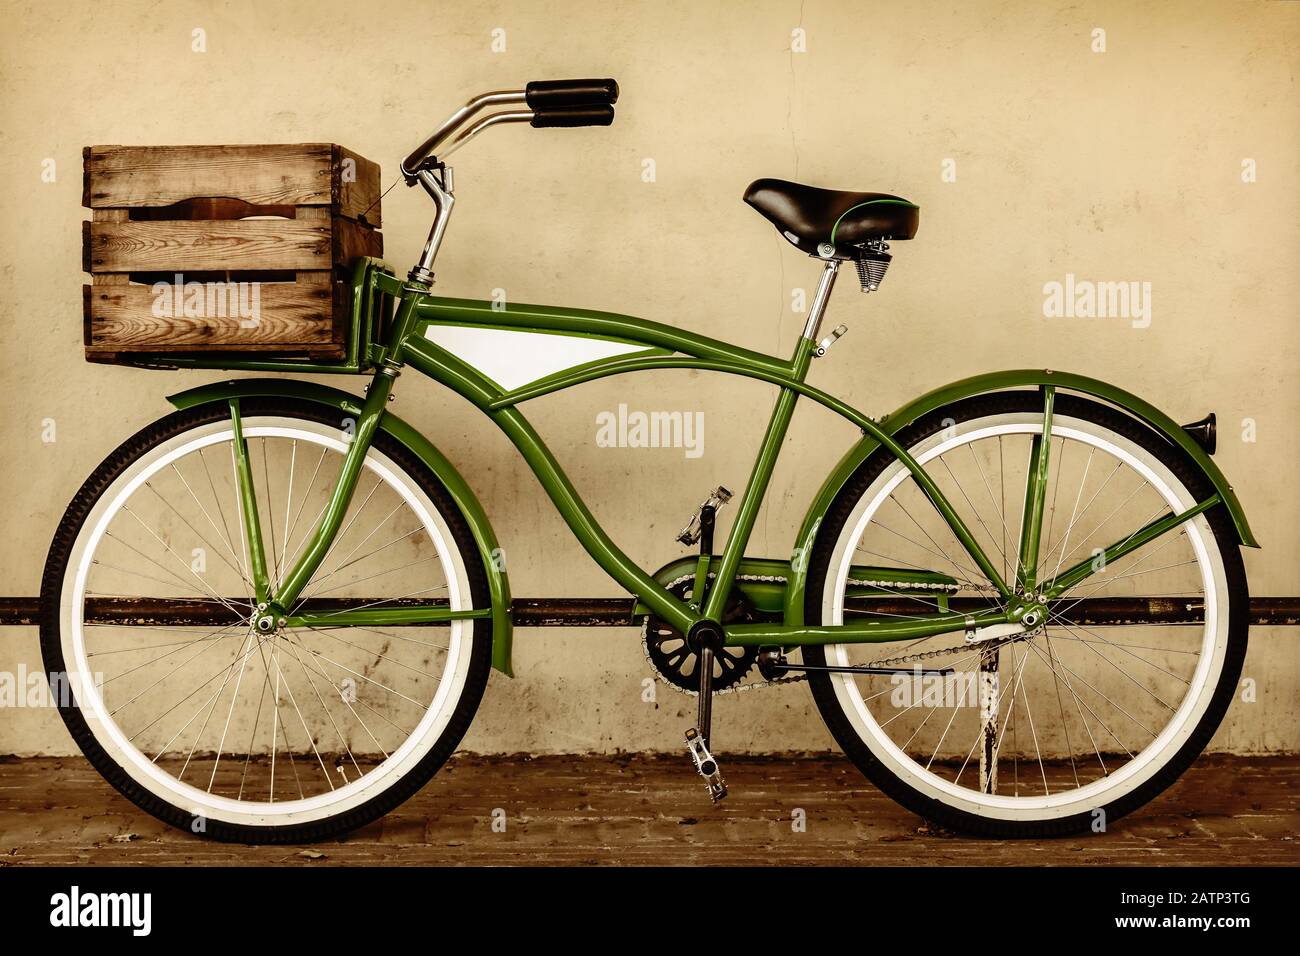 Immagine di seppia in stile retrò di una bicicletta da spiaggia vintage Cruiser con cassa di legno Foto Stock